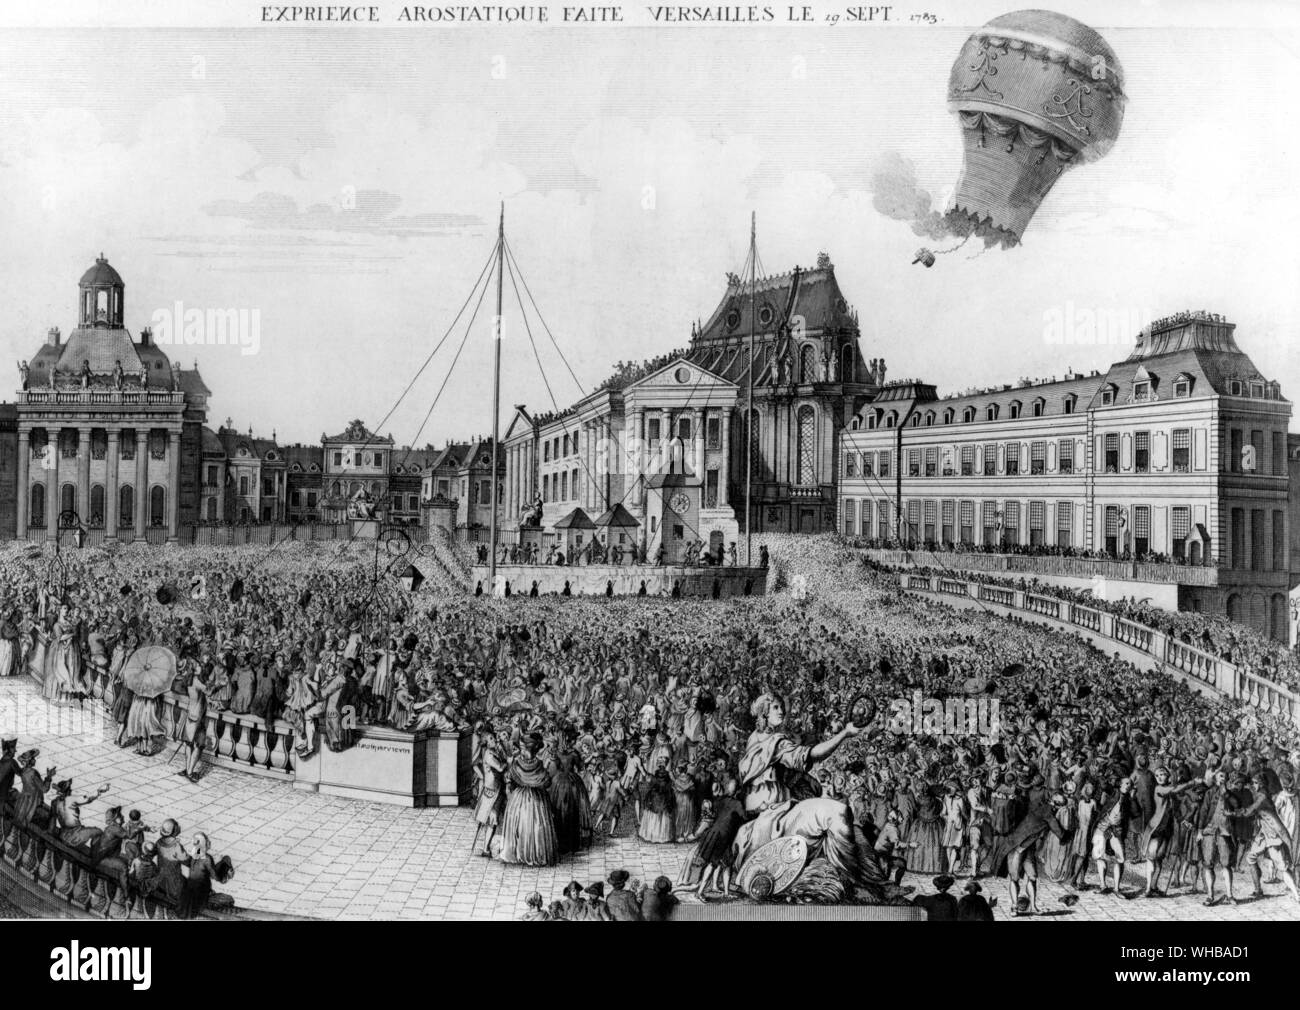 Versailles : esperienza Aerostatique - mostra il palloncino che trasportano gli animali che si eleva al di sopra della piazza affollata. 19 Settembre 1783 Foto Stock